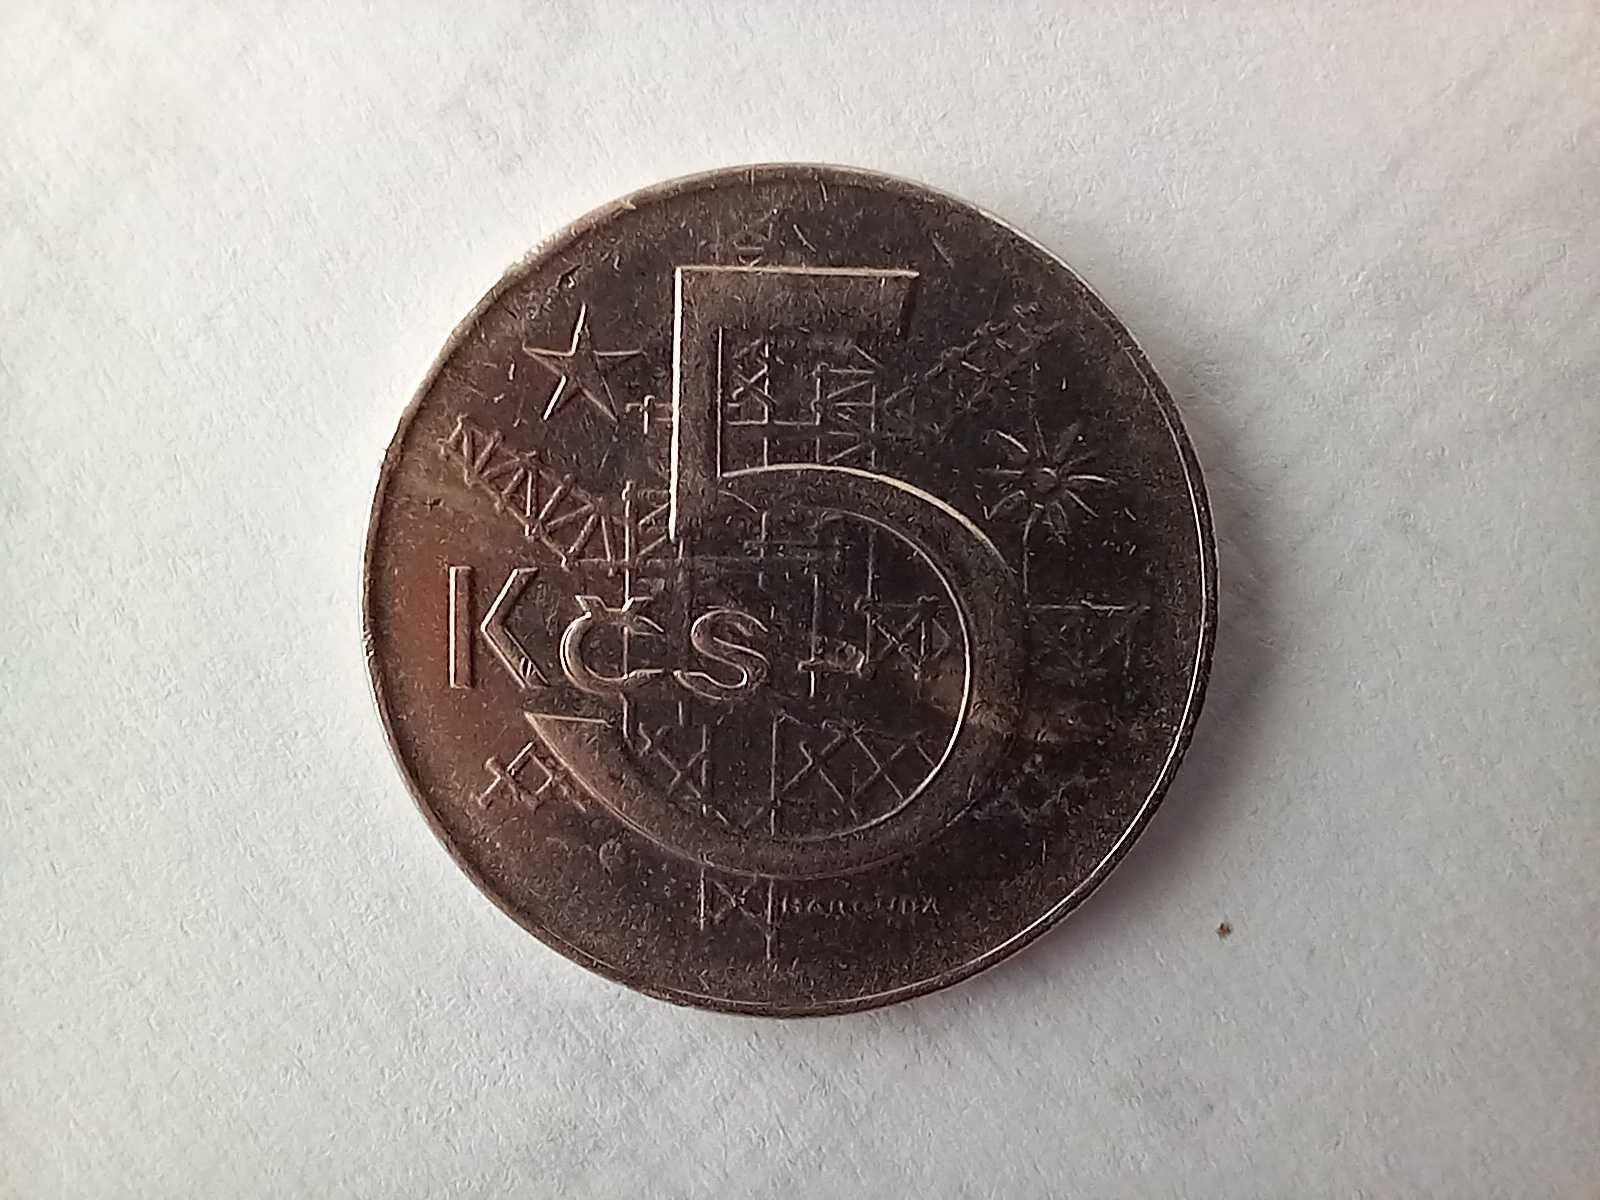 Moneta Czechosłowacja - 5 koron 1975 /5/